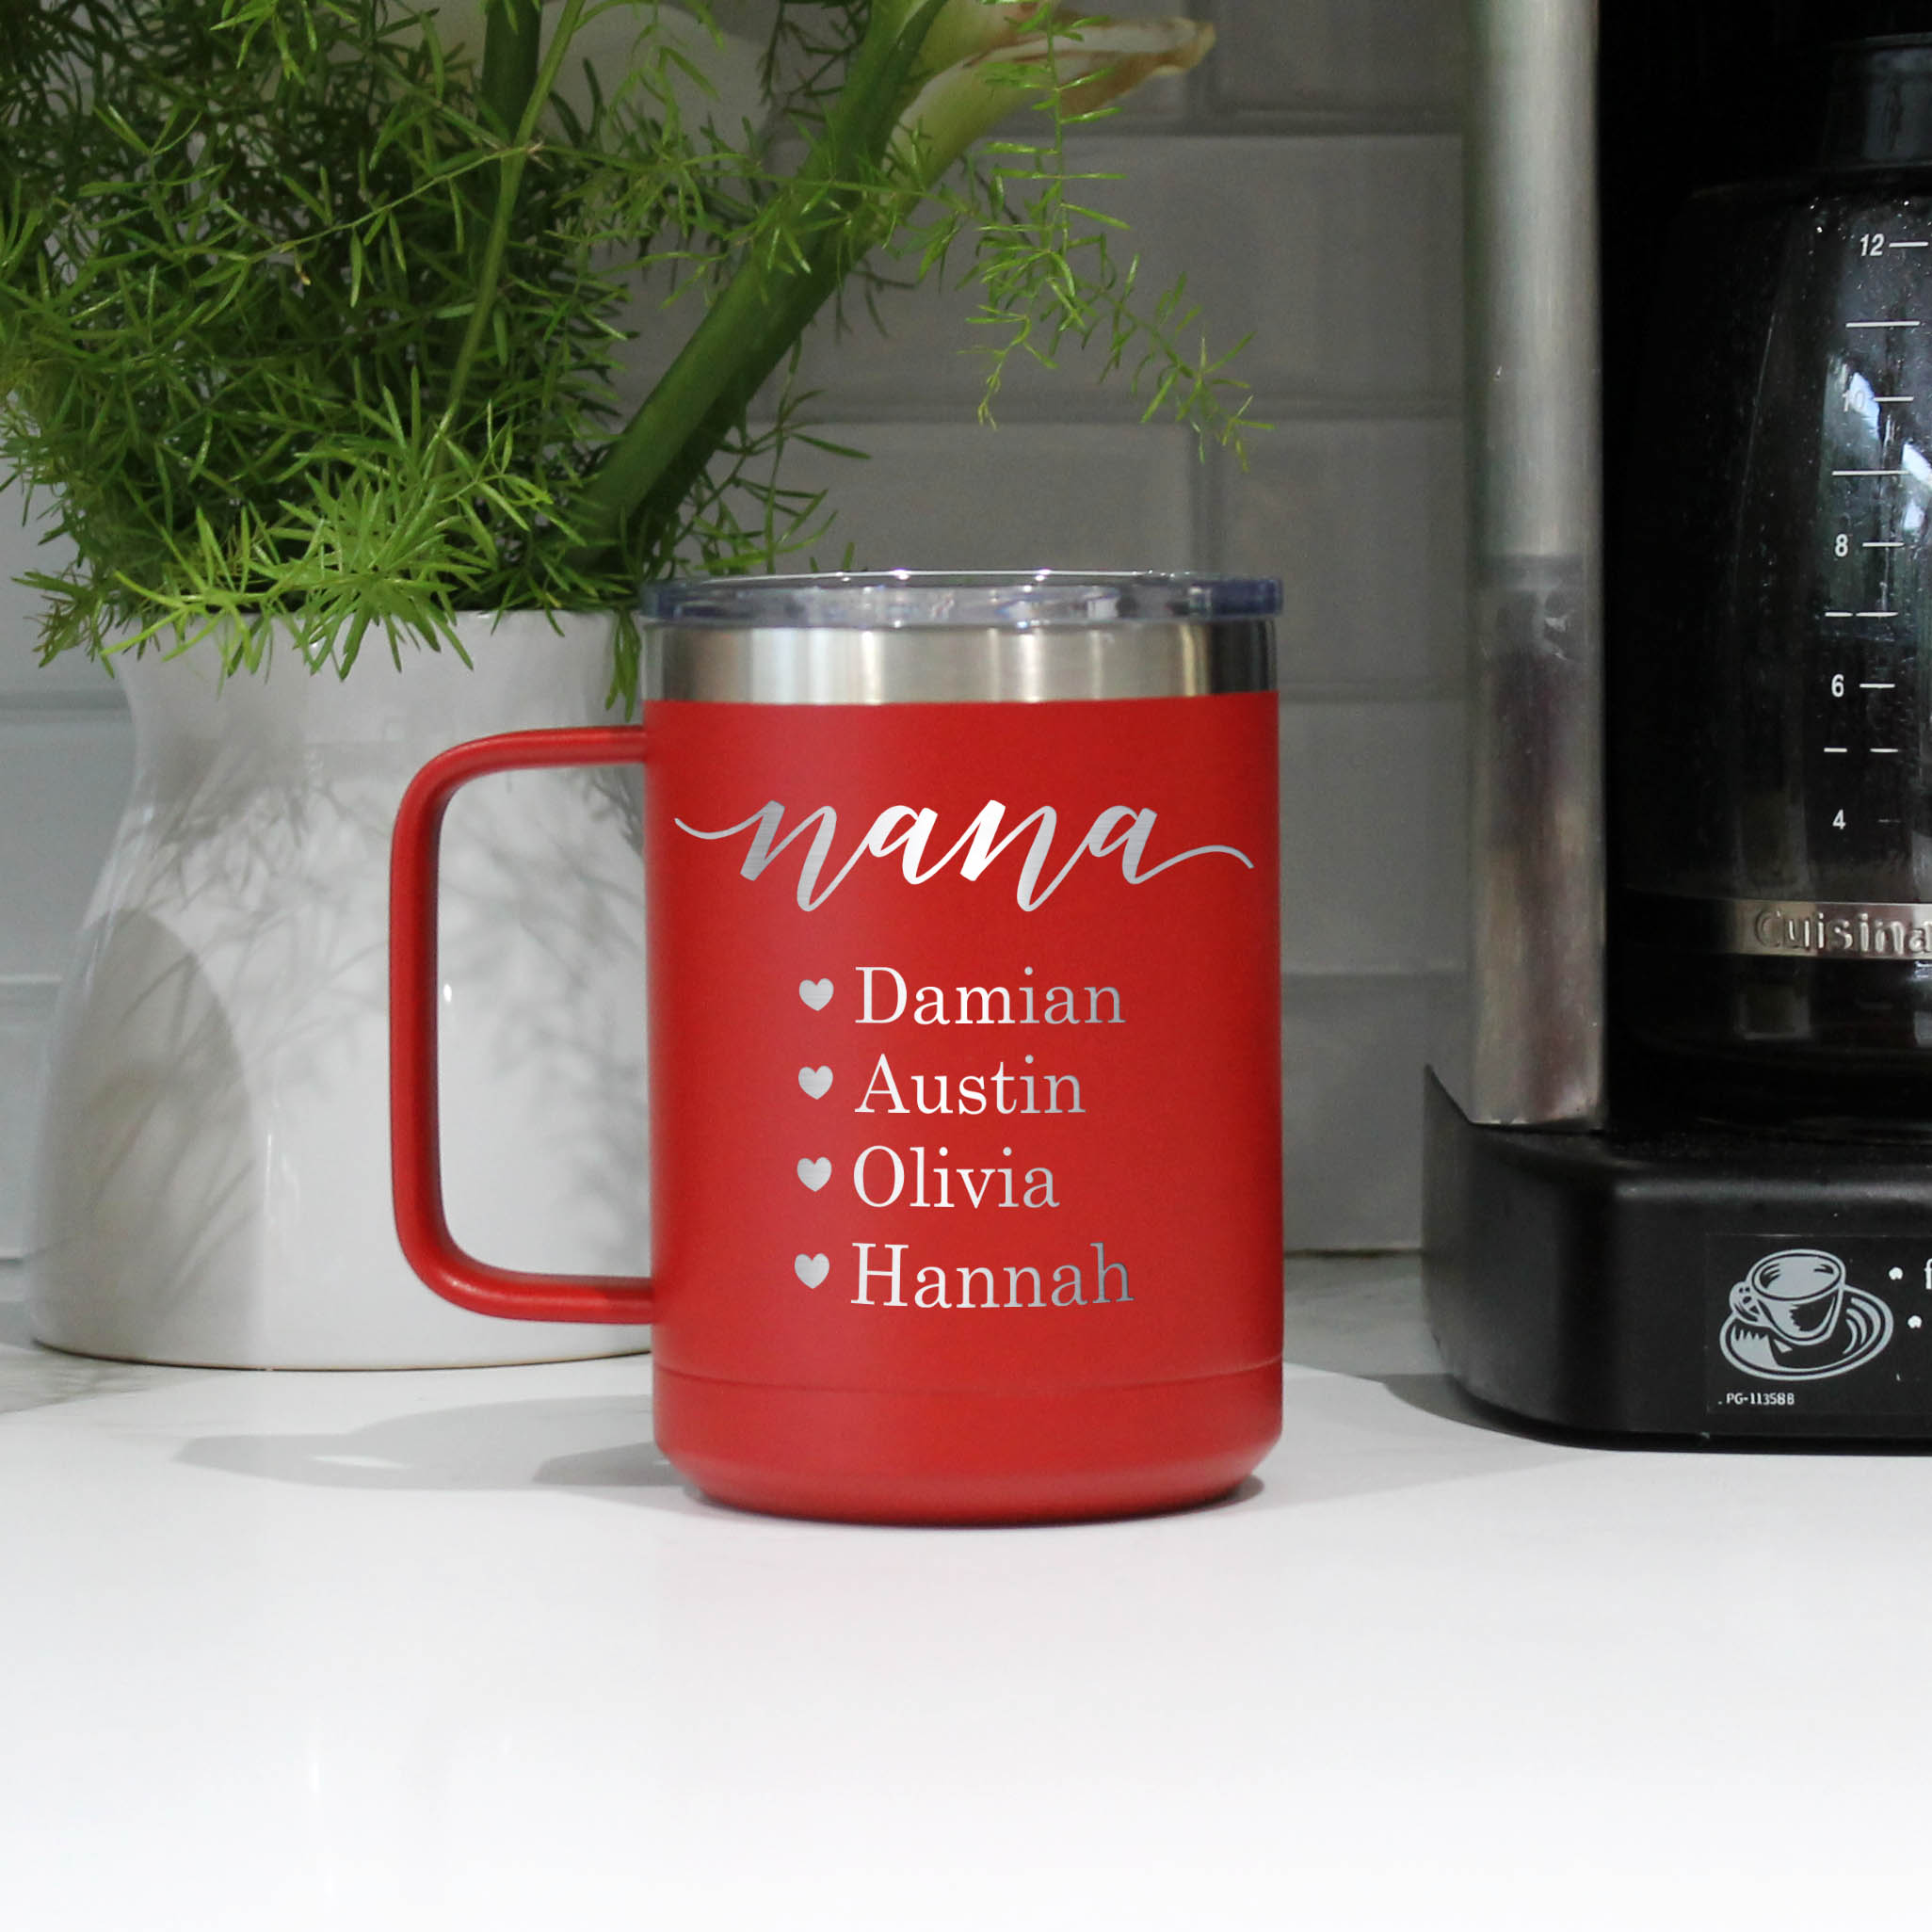 Personalised Travel Mug Metal Coffee Cup Engraved Coffee Cup